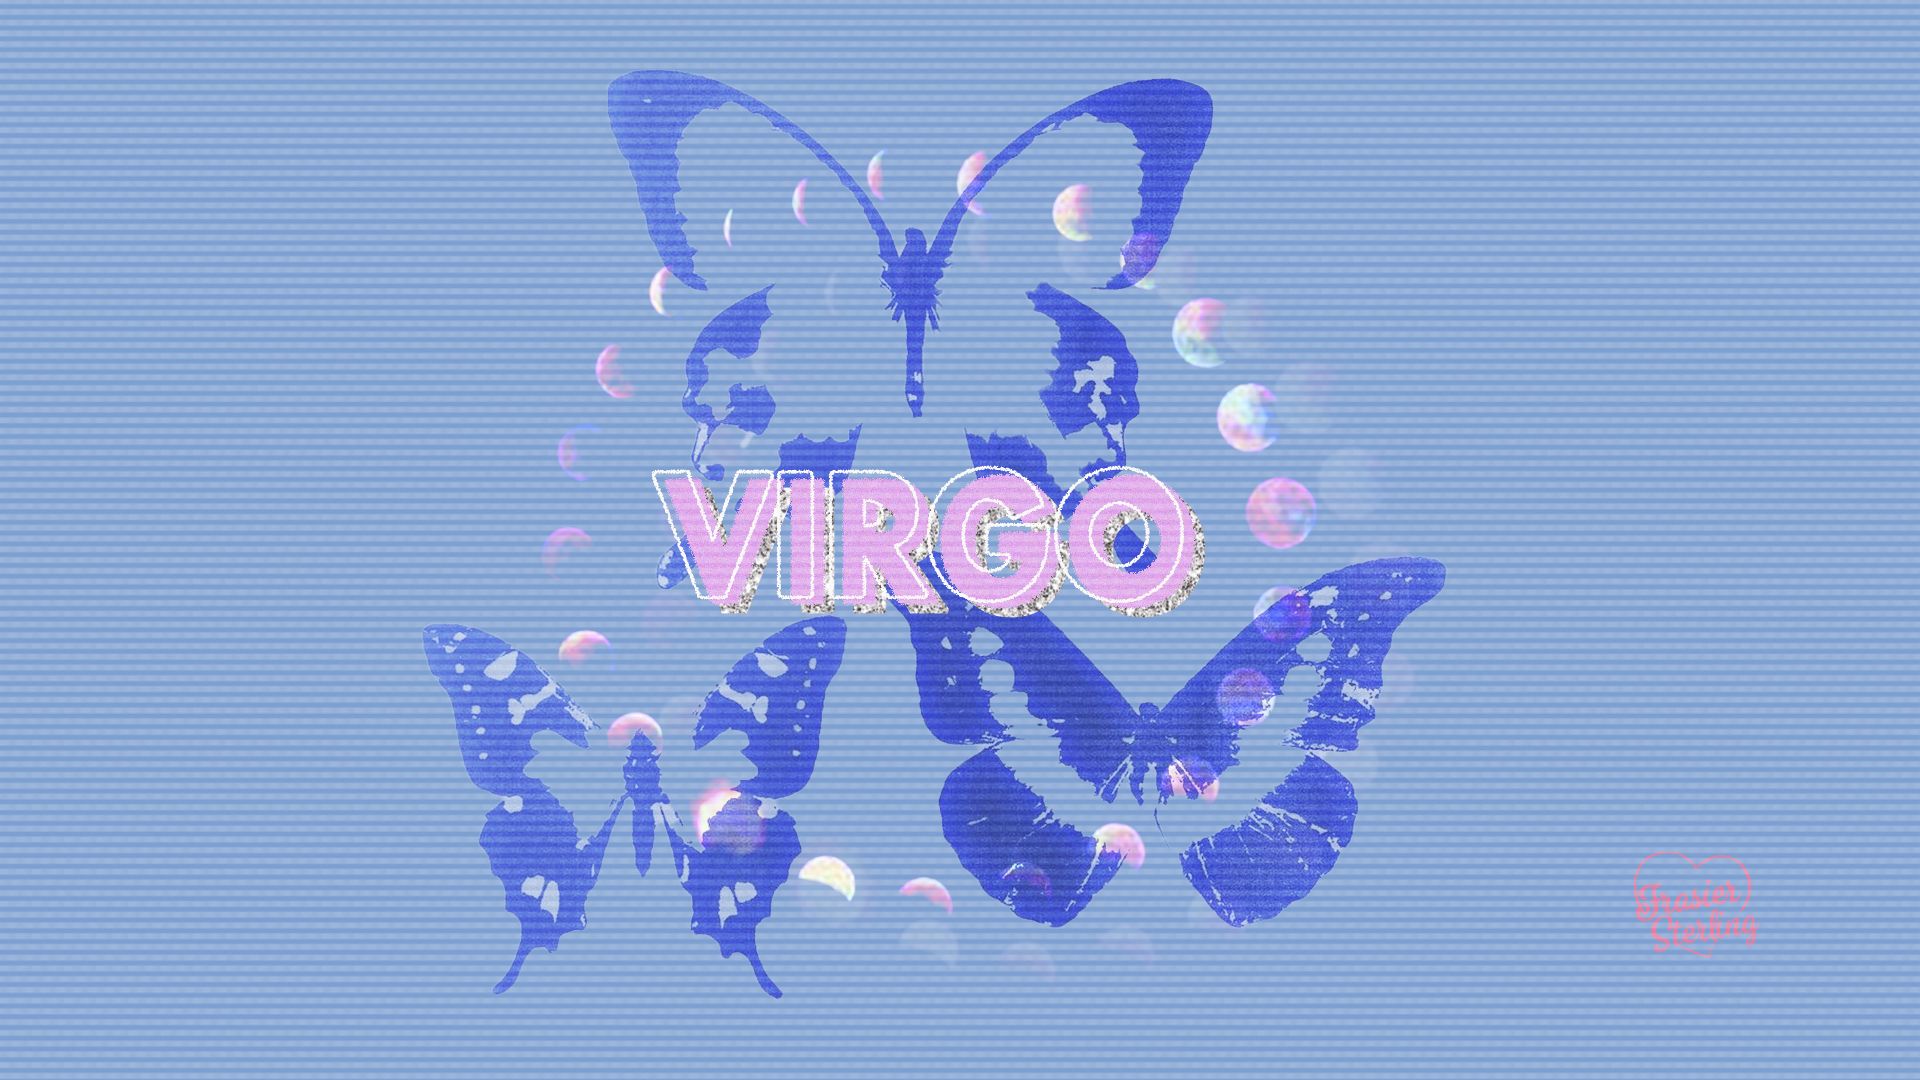 Virgo Glitch Wallpaper